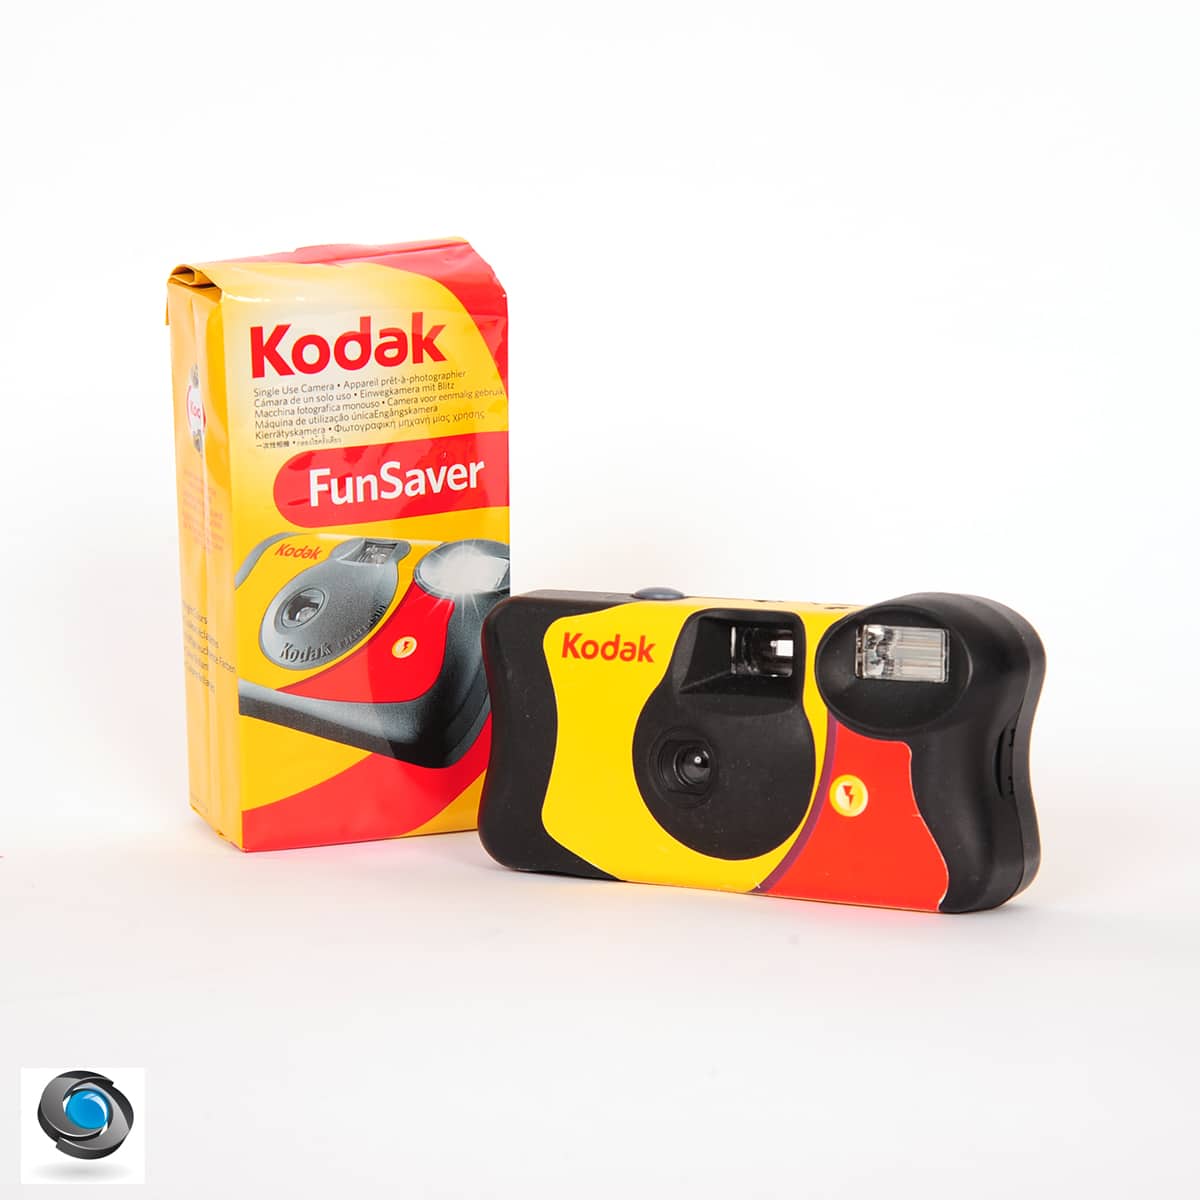 2 x étui jetable Kodak pour appareil photo, mariage vert sauge autocollant  uniquement appareil photo byo -  France